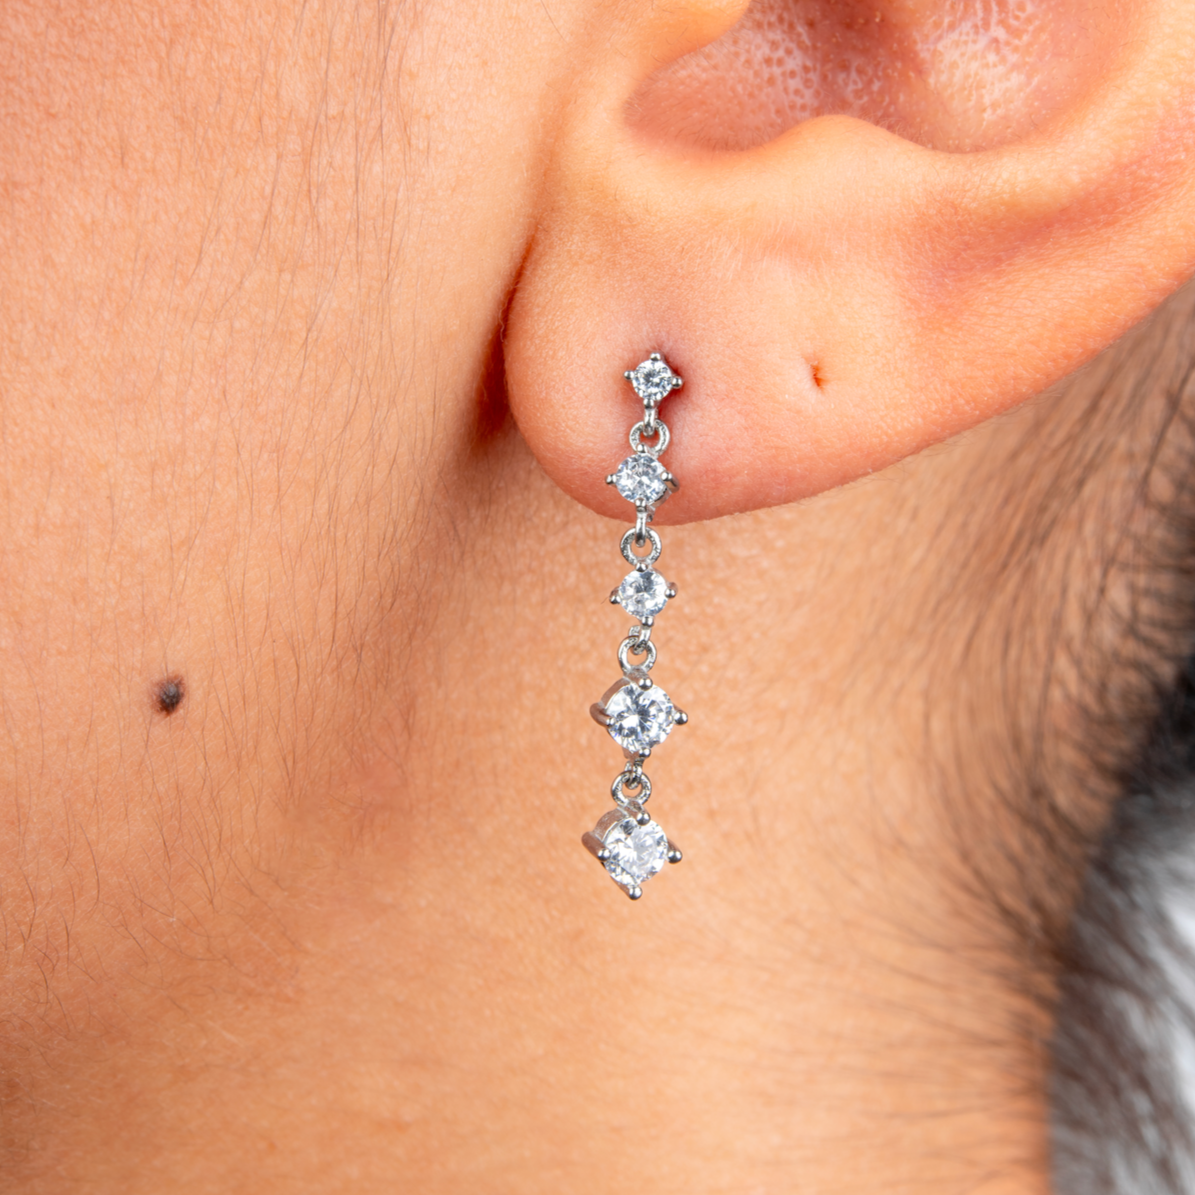 Jade Earrings